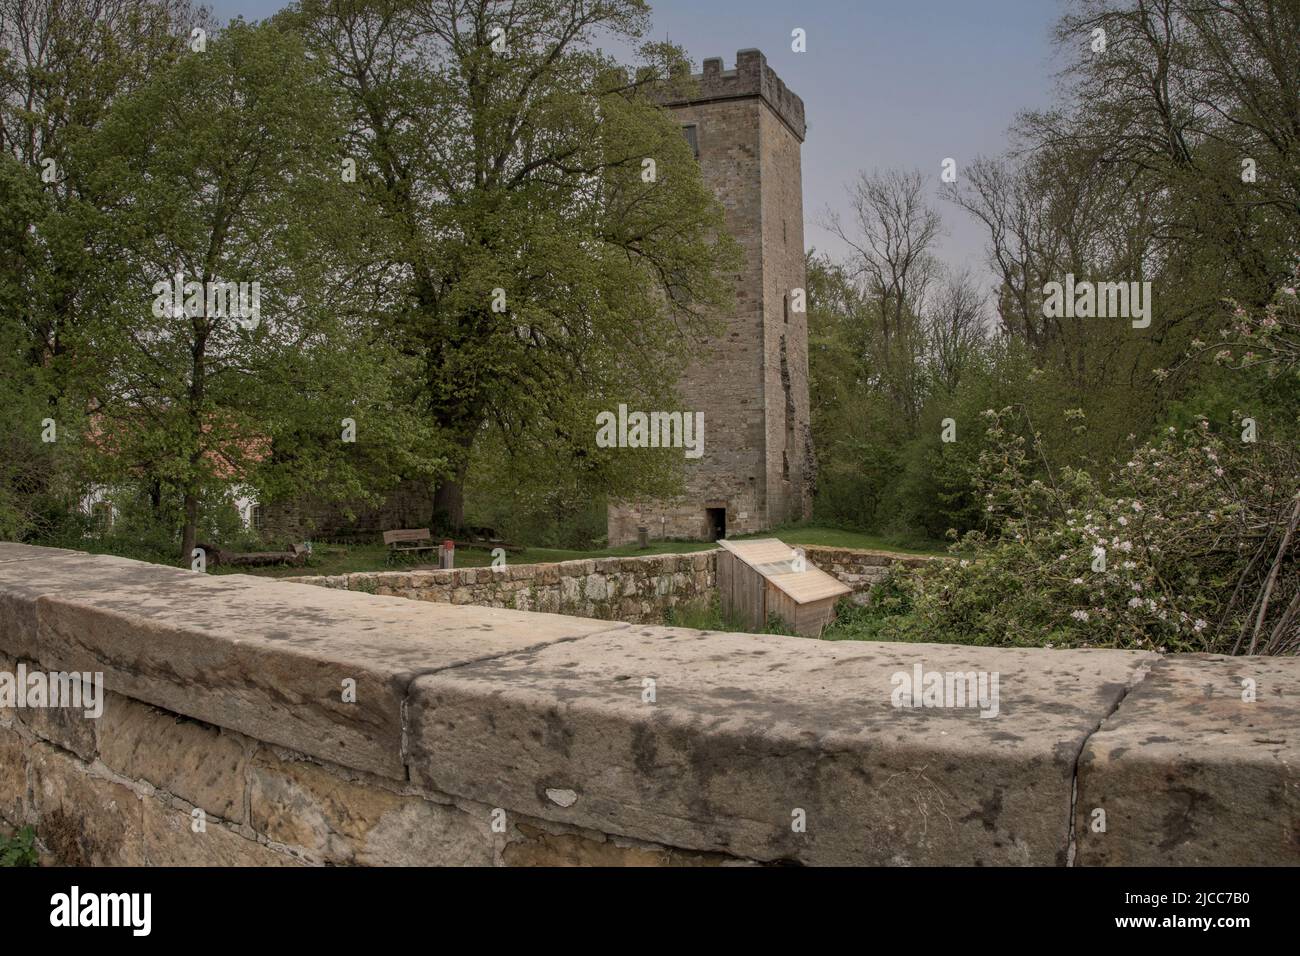 Der Burgturm ist bis heute begeh bar, hier ein Blick auf die alten Mauern mit dem Turm und die schöne und geflegte Anlage Foto Stock